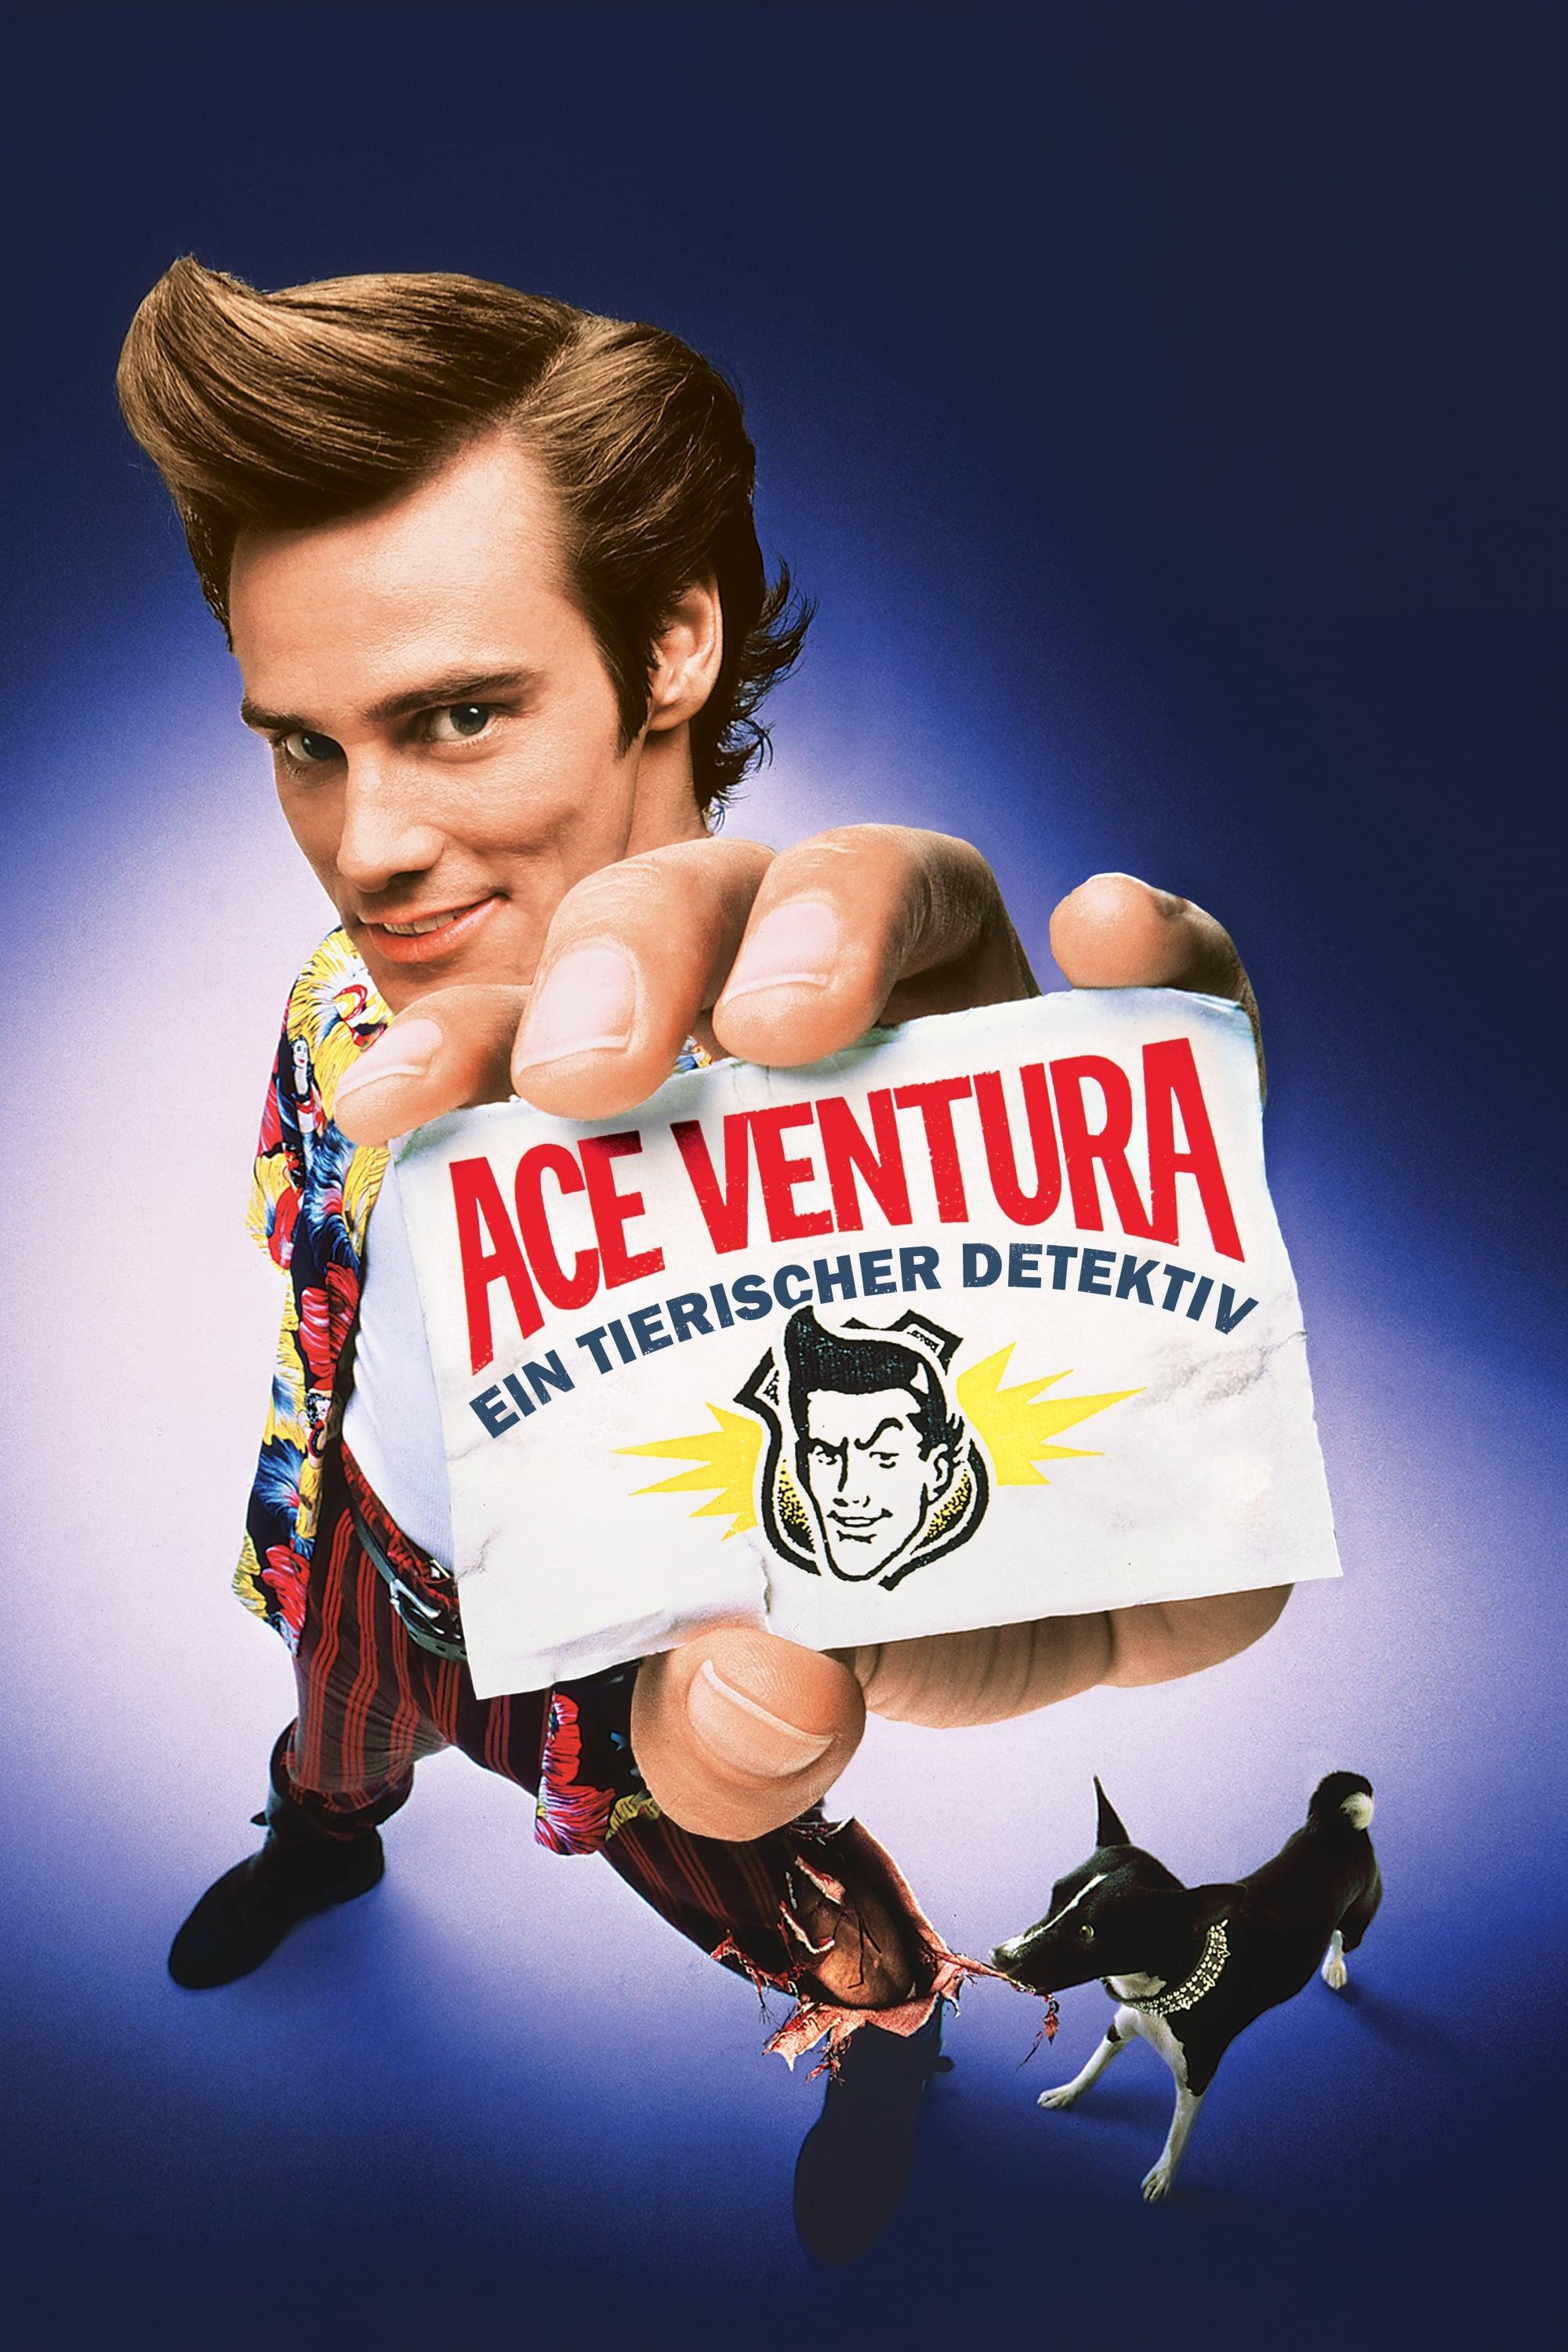 Ace Ventura - Ein tierischer Detektiv poster